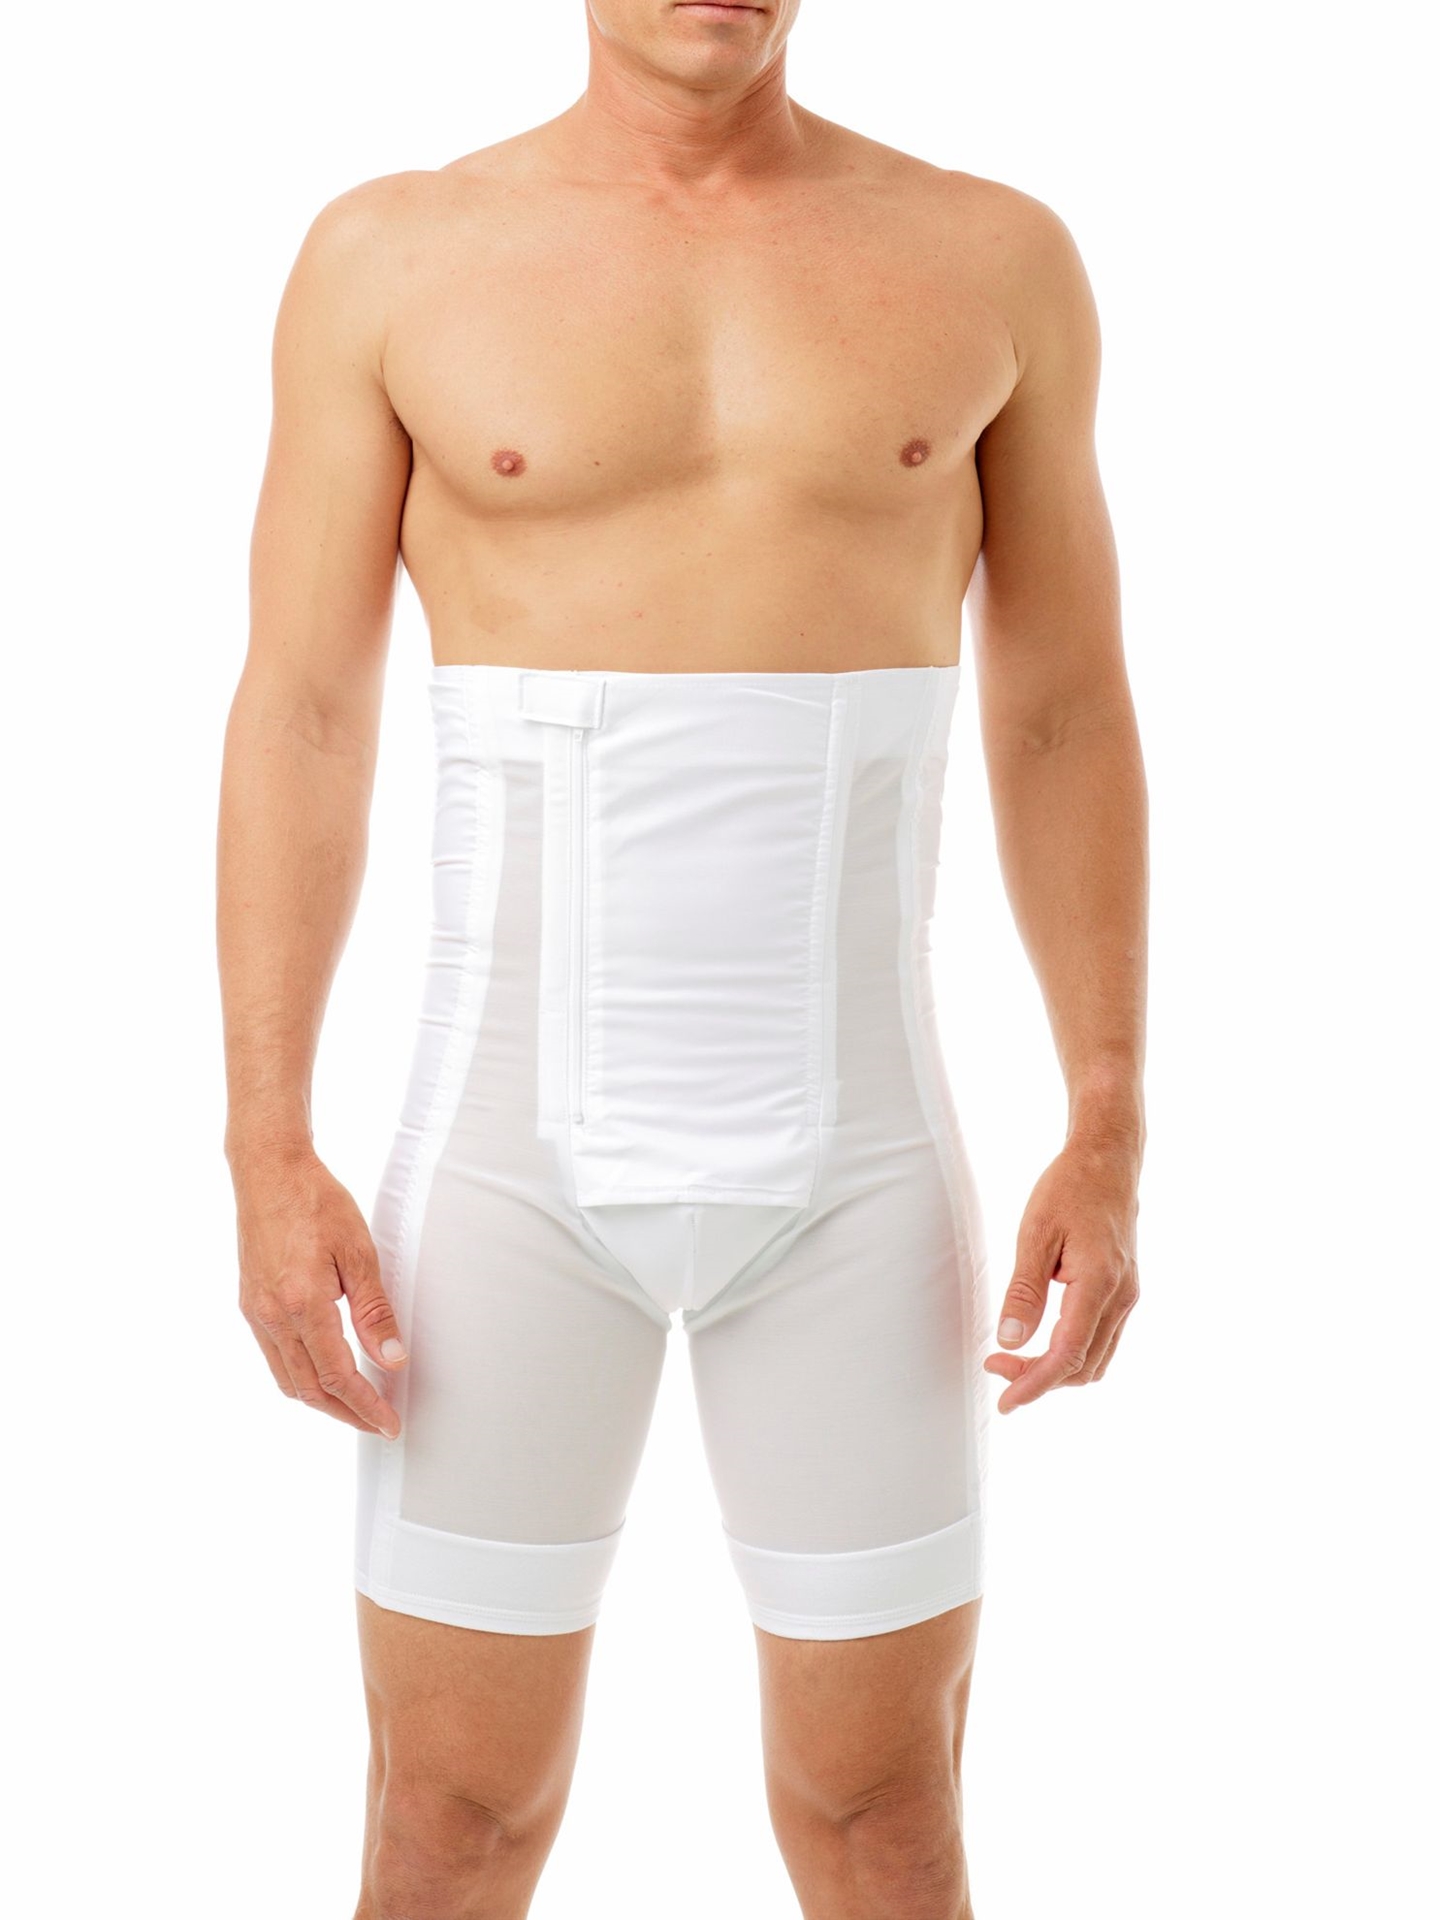 Men's Abdominal Shorts Body Shaper Compression High Waist Trainer Abdominal  Abdominal Slim Body Shaper Boxer Underwear Best Gift